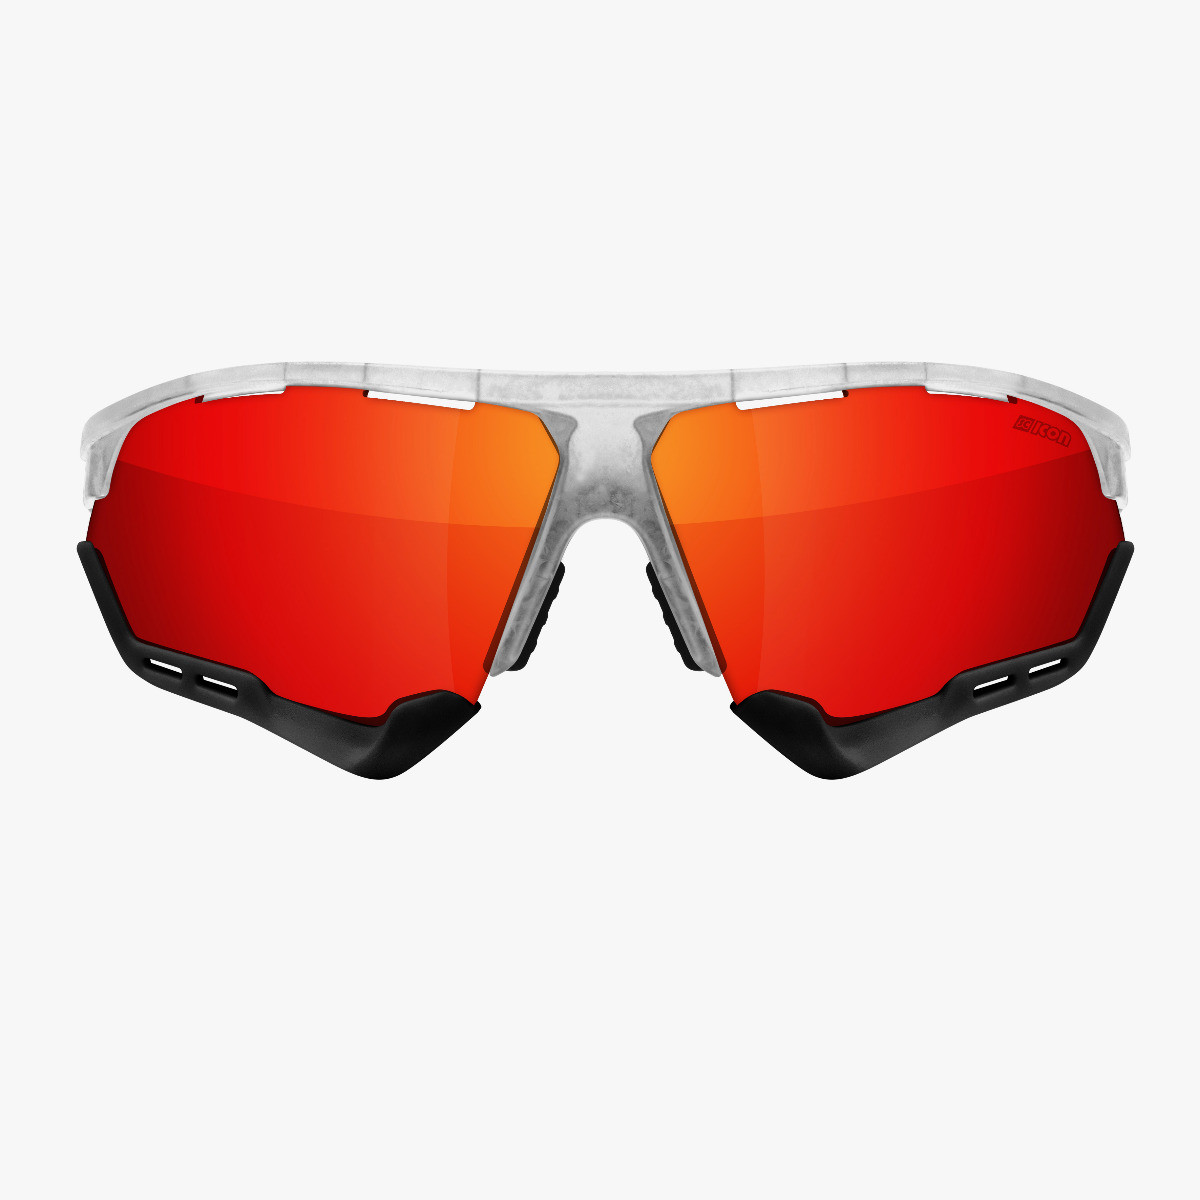 Aerocomfort performance sunglasses scnpp frozen frame red lenses EY19060503
